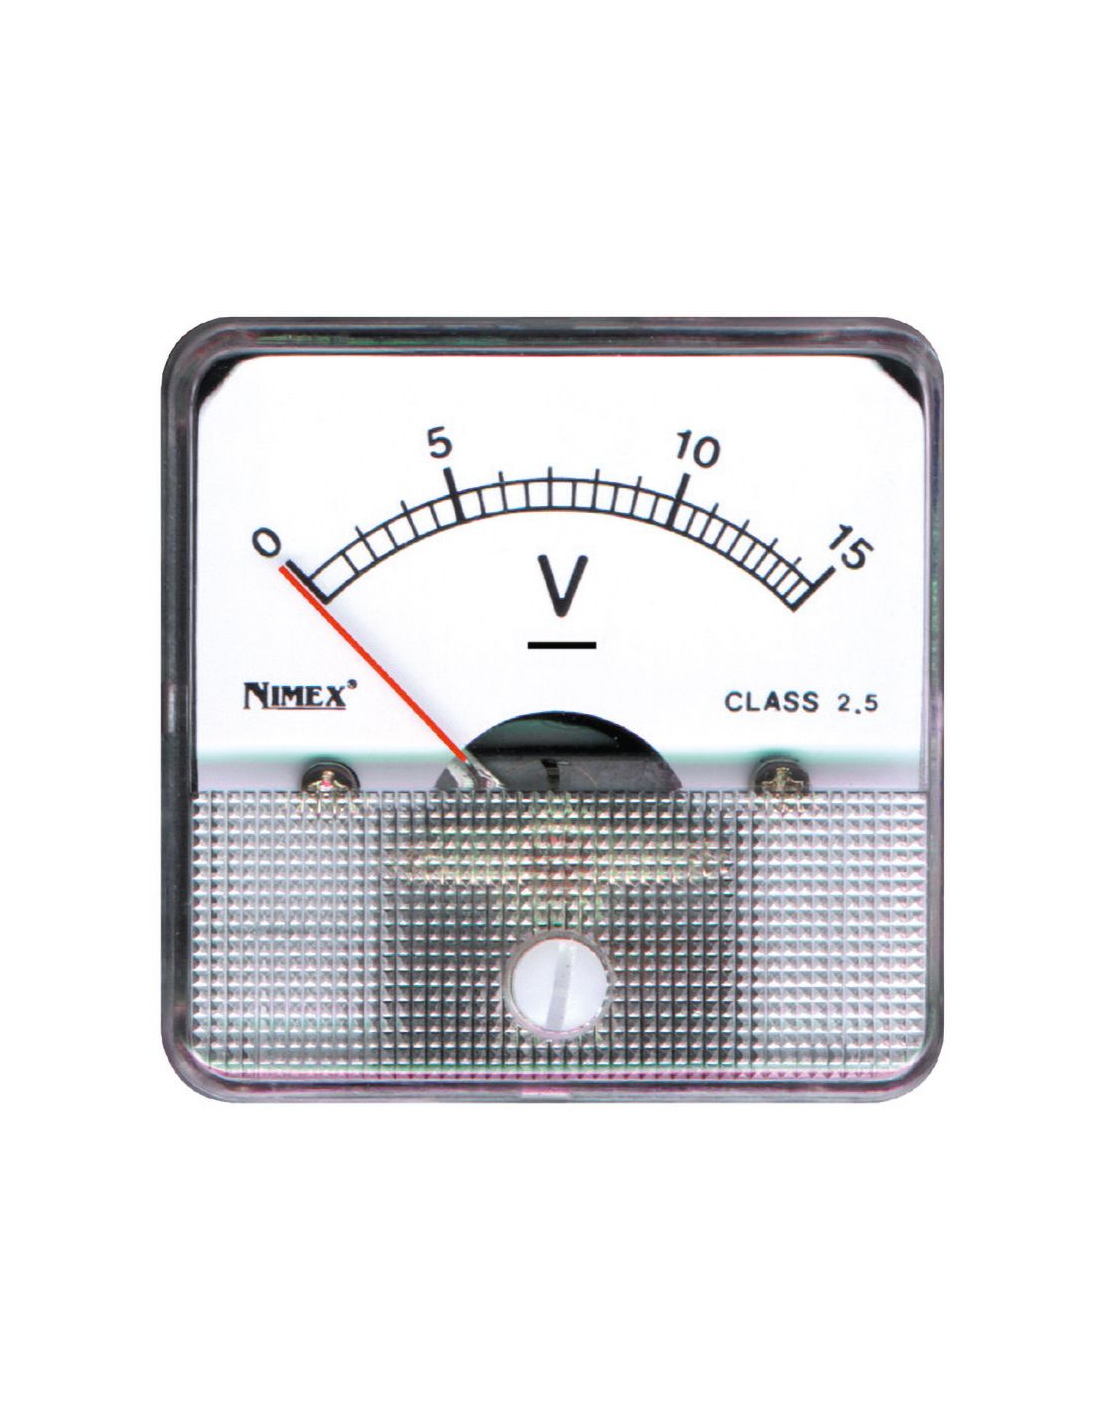 Analogue panel voltmeter, for DC voltage, 44x44mm, range 15V